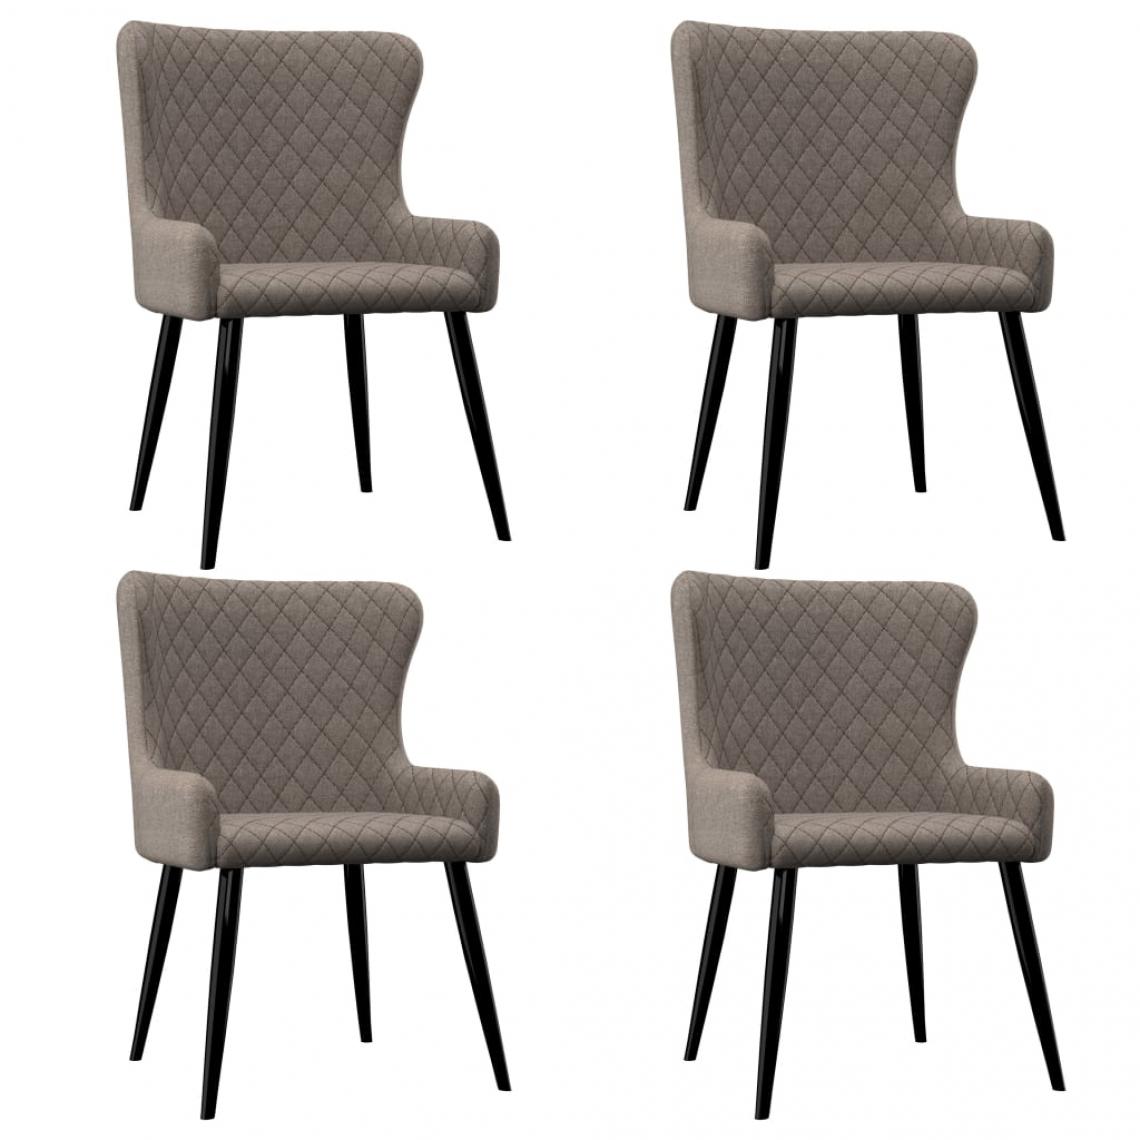 Decoshop26 - Lot de 4 chaises de salle à manger cuisine style moderne et chic en tissu couleur taupe CDS021994 - Chaises